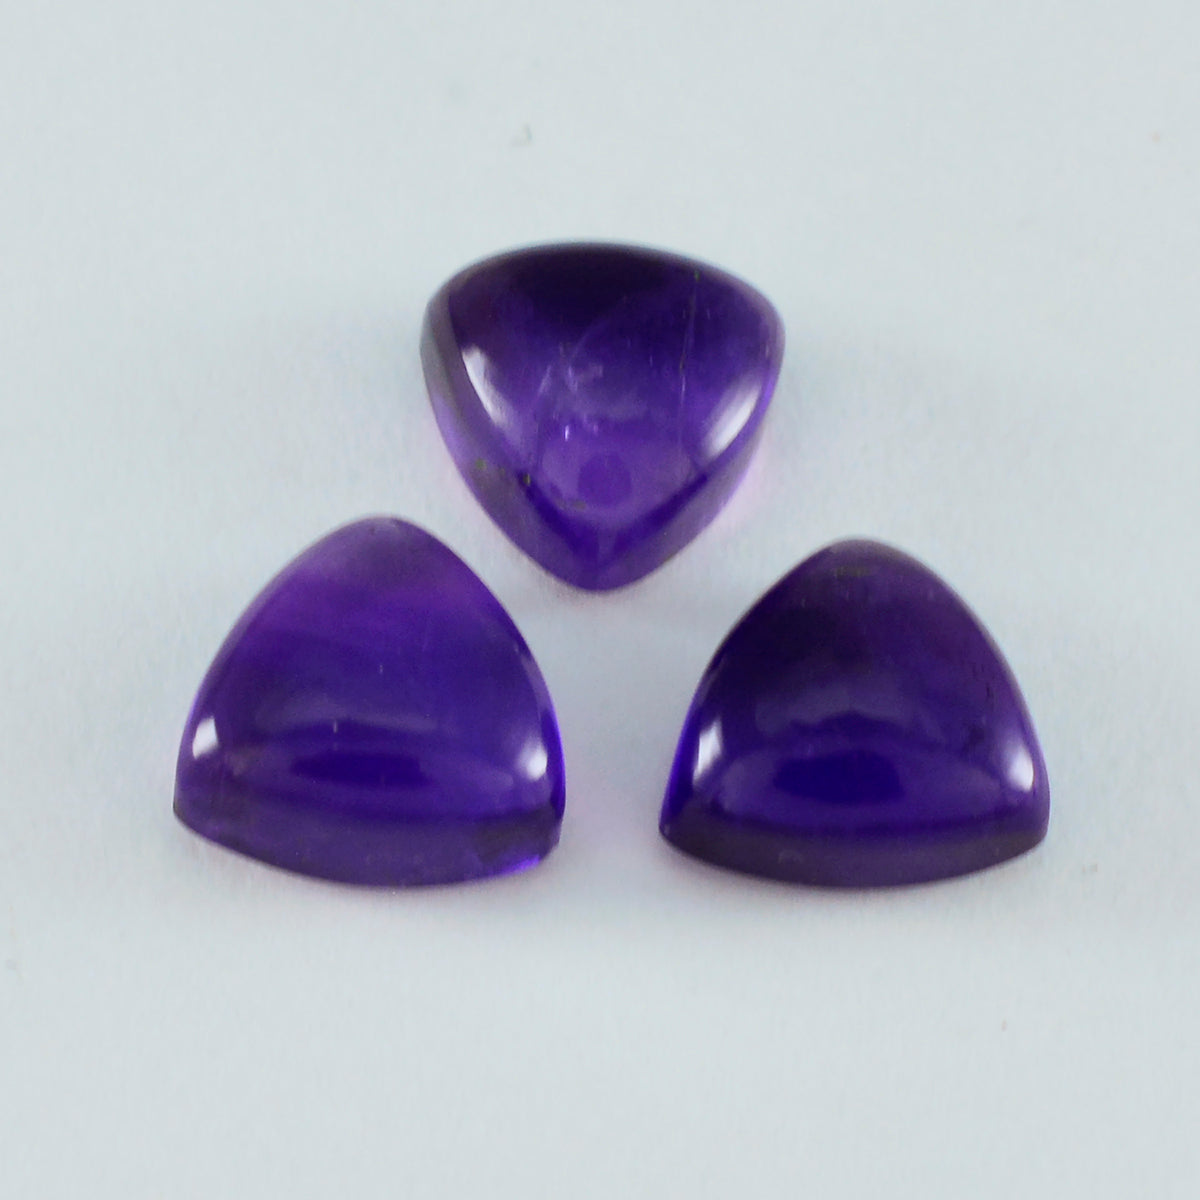 riyogems 1 шт., фиолетовый аметист, кабошон 8x8 мм, форма триллиона, прекрасное качество, свободный драгоценный камень